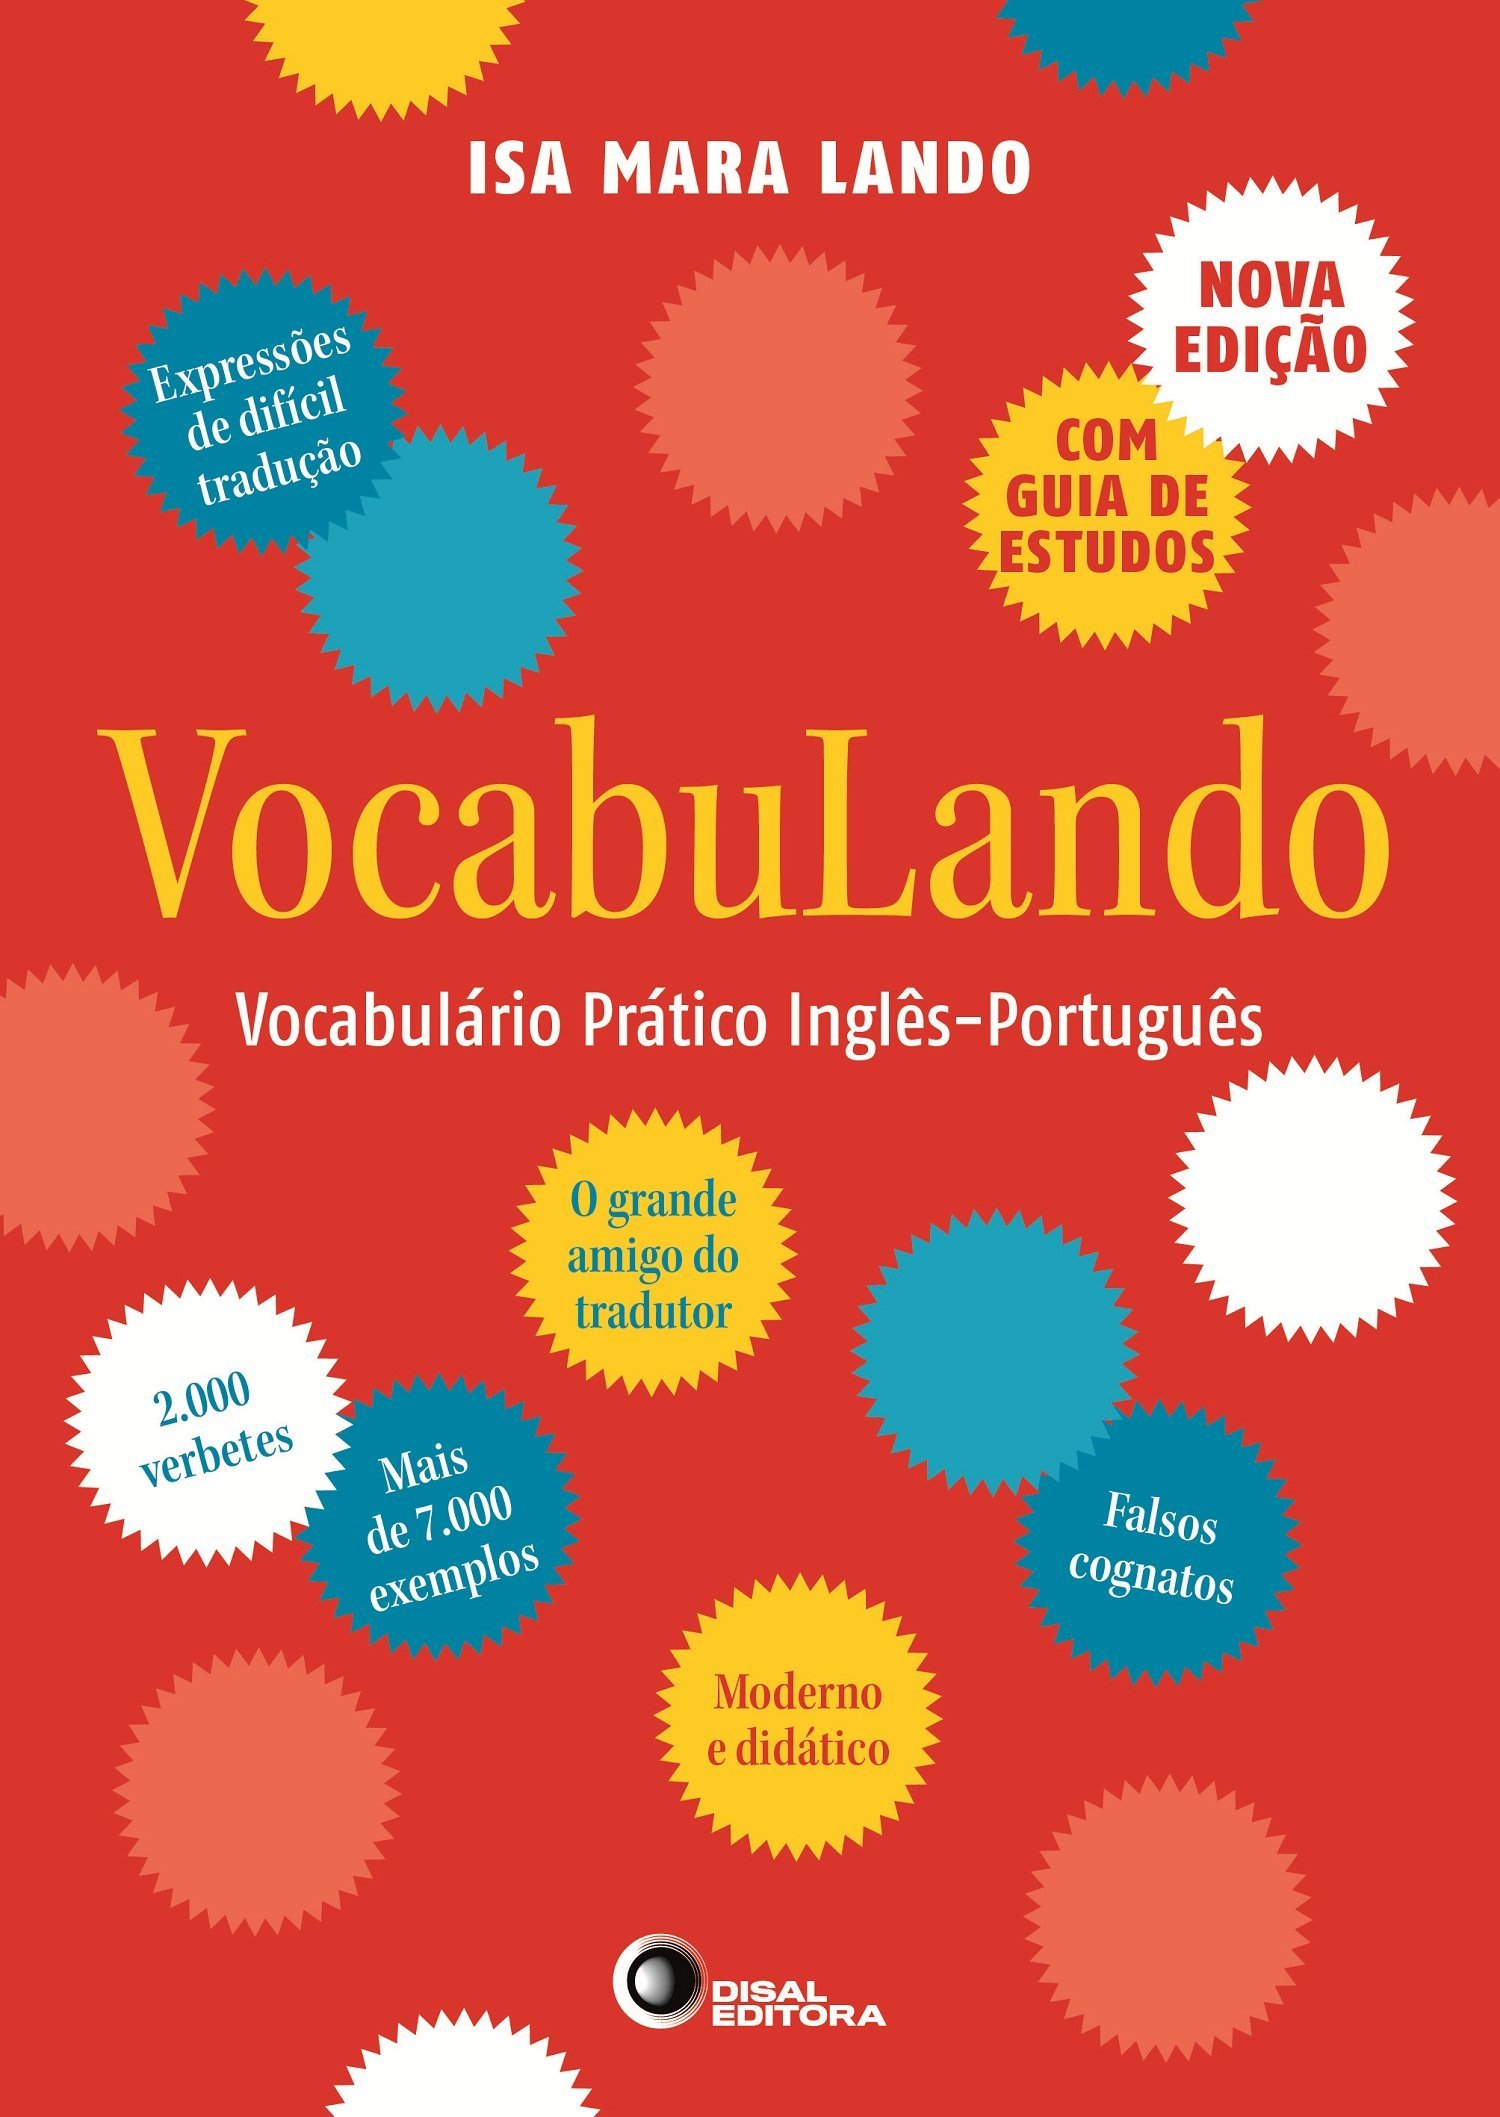 COVER - Vocabulando new.jpg